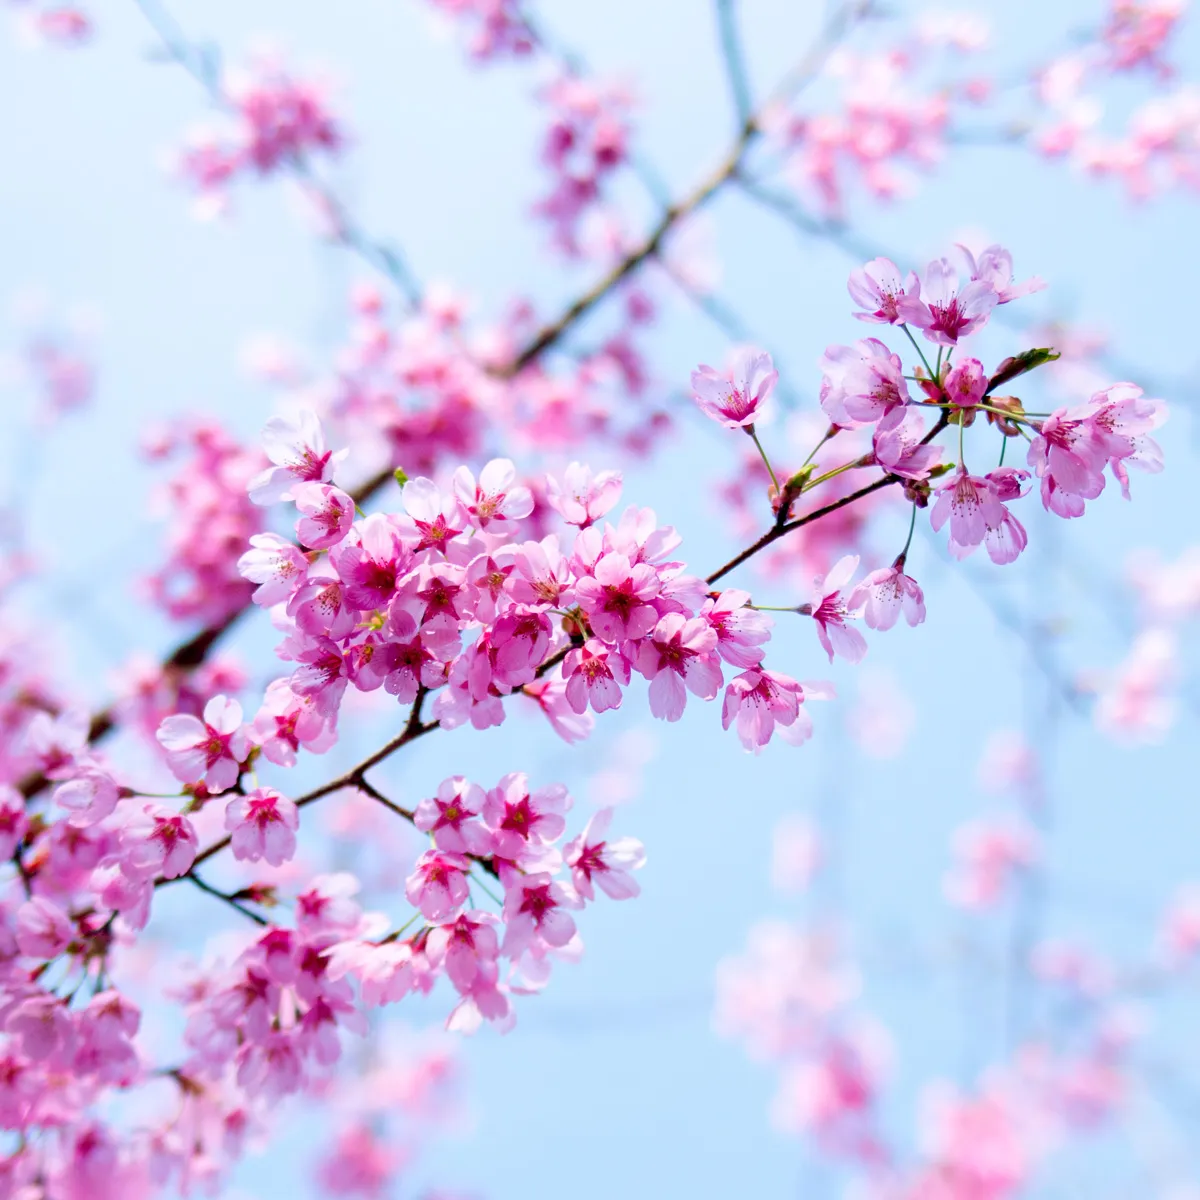 körsbärsträd i blom plantering